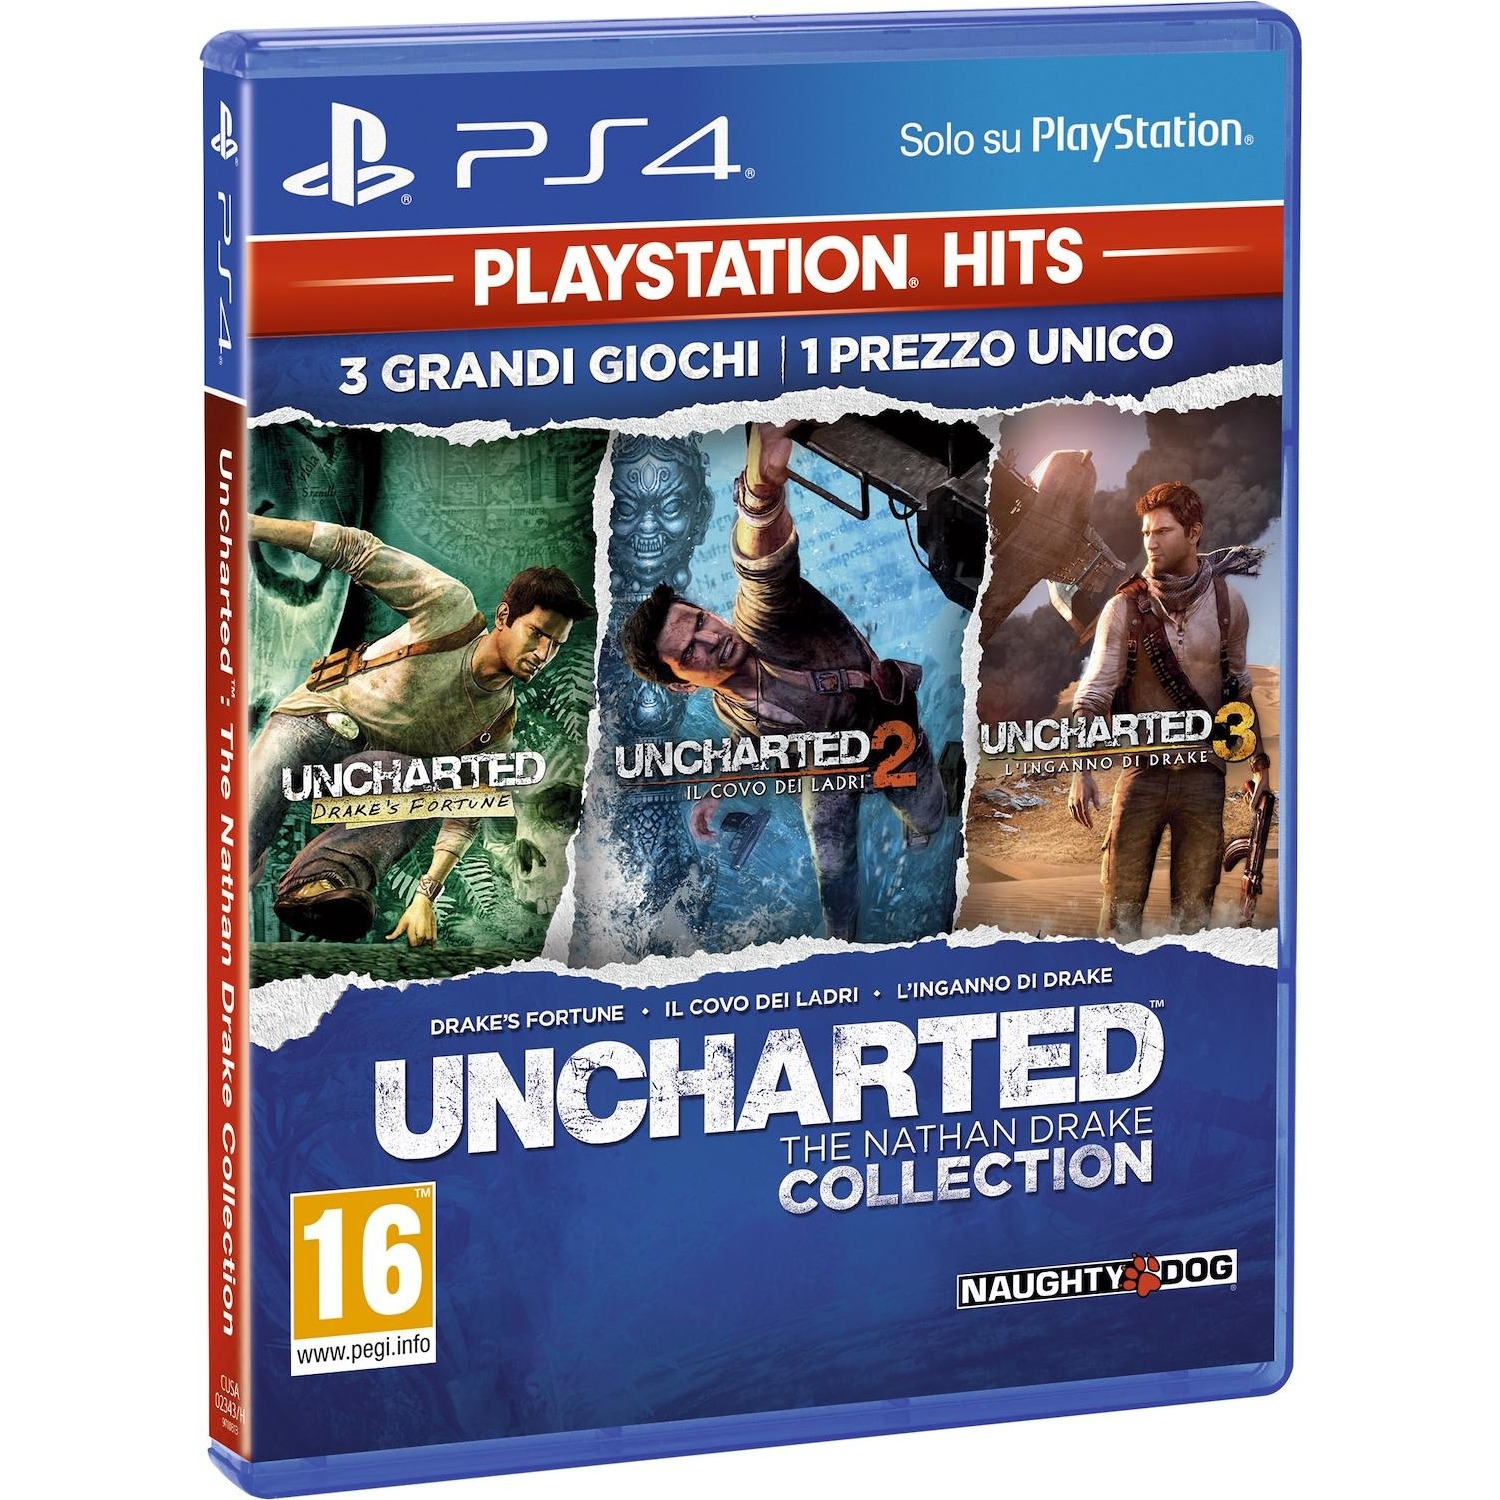 Immagine per Gioco PS4 Uncharted collection "hits" da DIMOStore